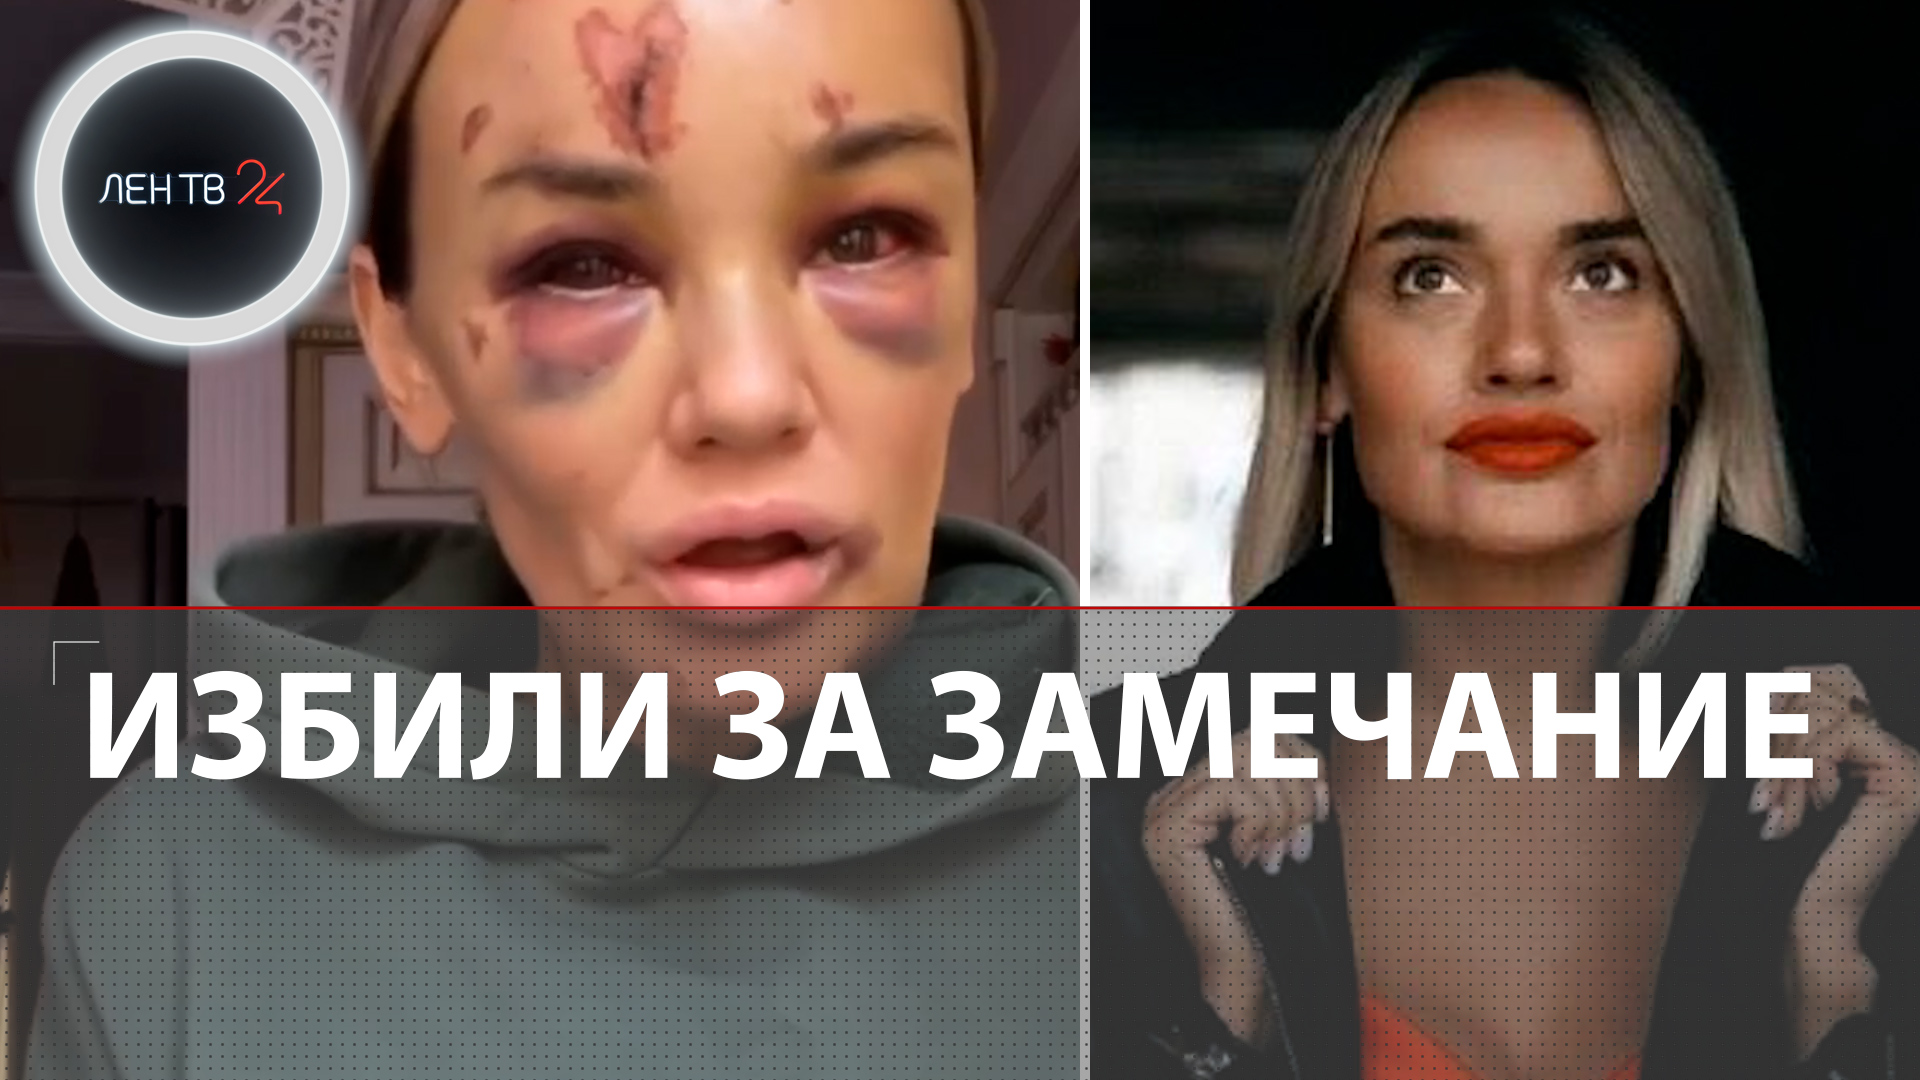 Анну Леонову жестоко избили из-за замечания | Нападение на мать троих детей попало на видео